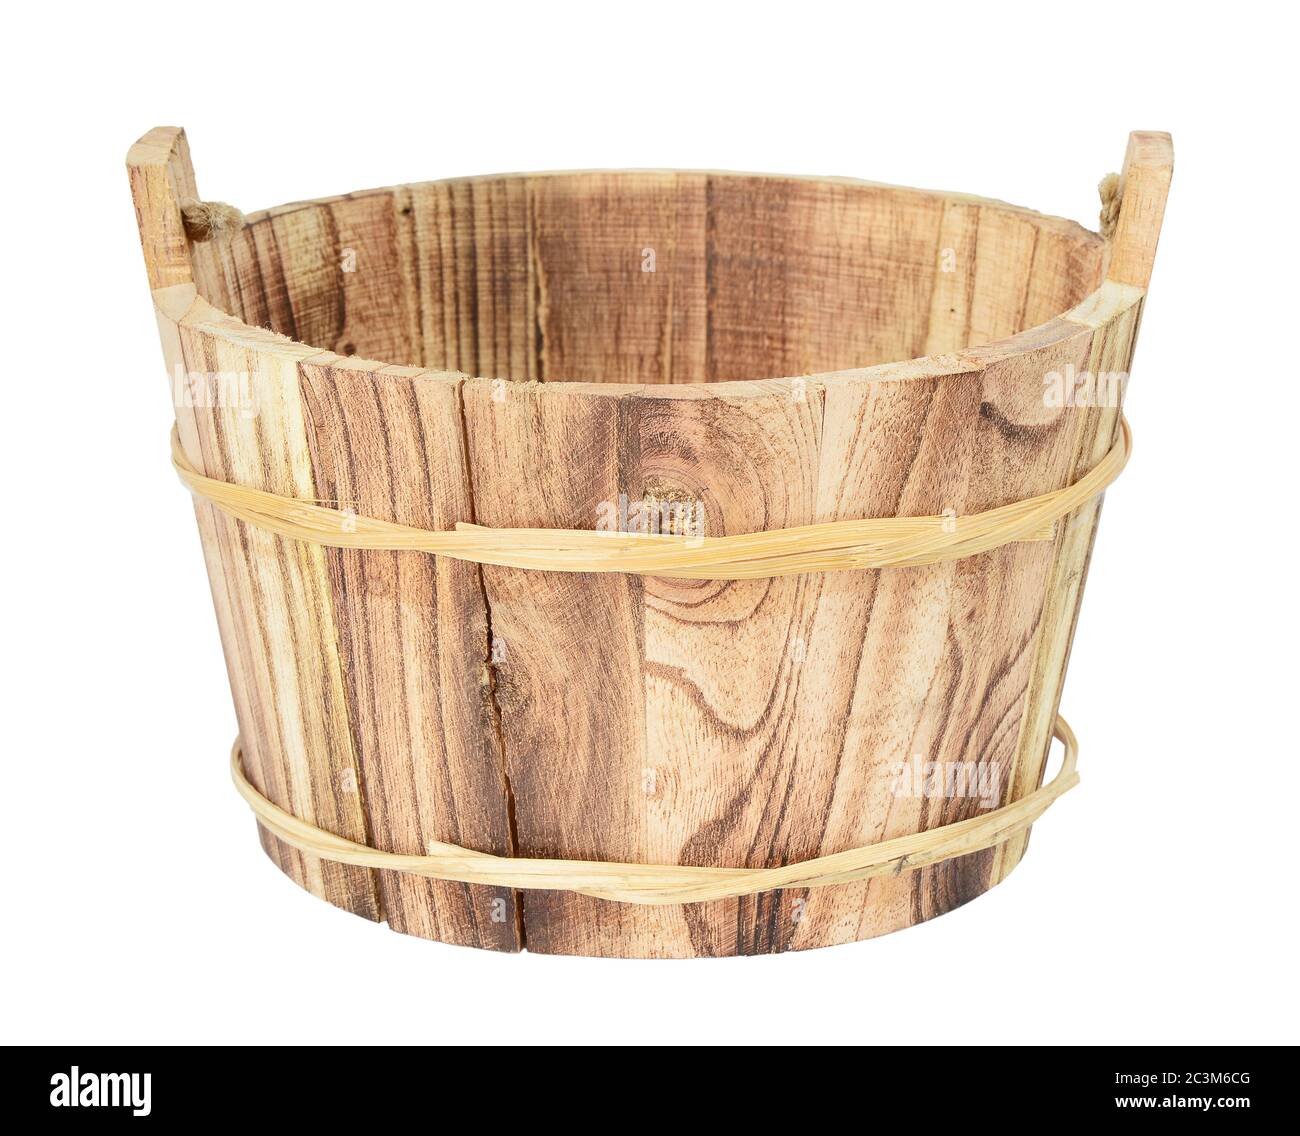 Secchio di legno, bacino, vasca o vasca isolato su fondo bianco Foto Stock